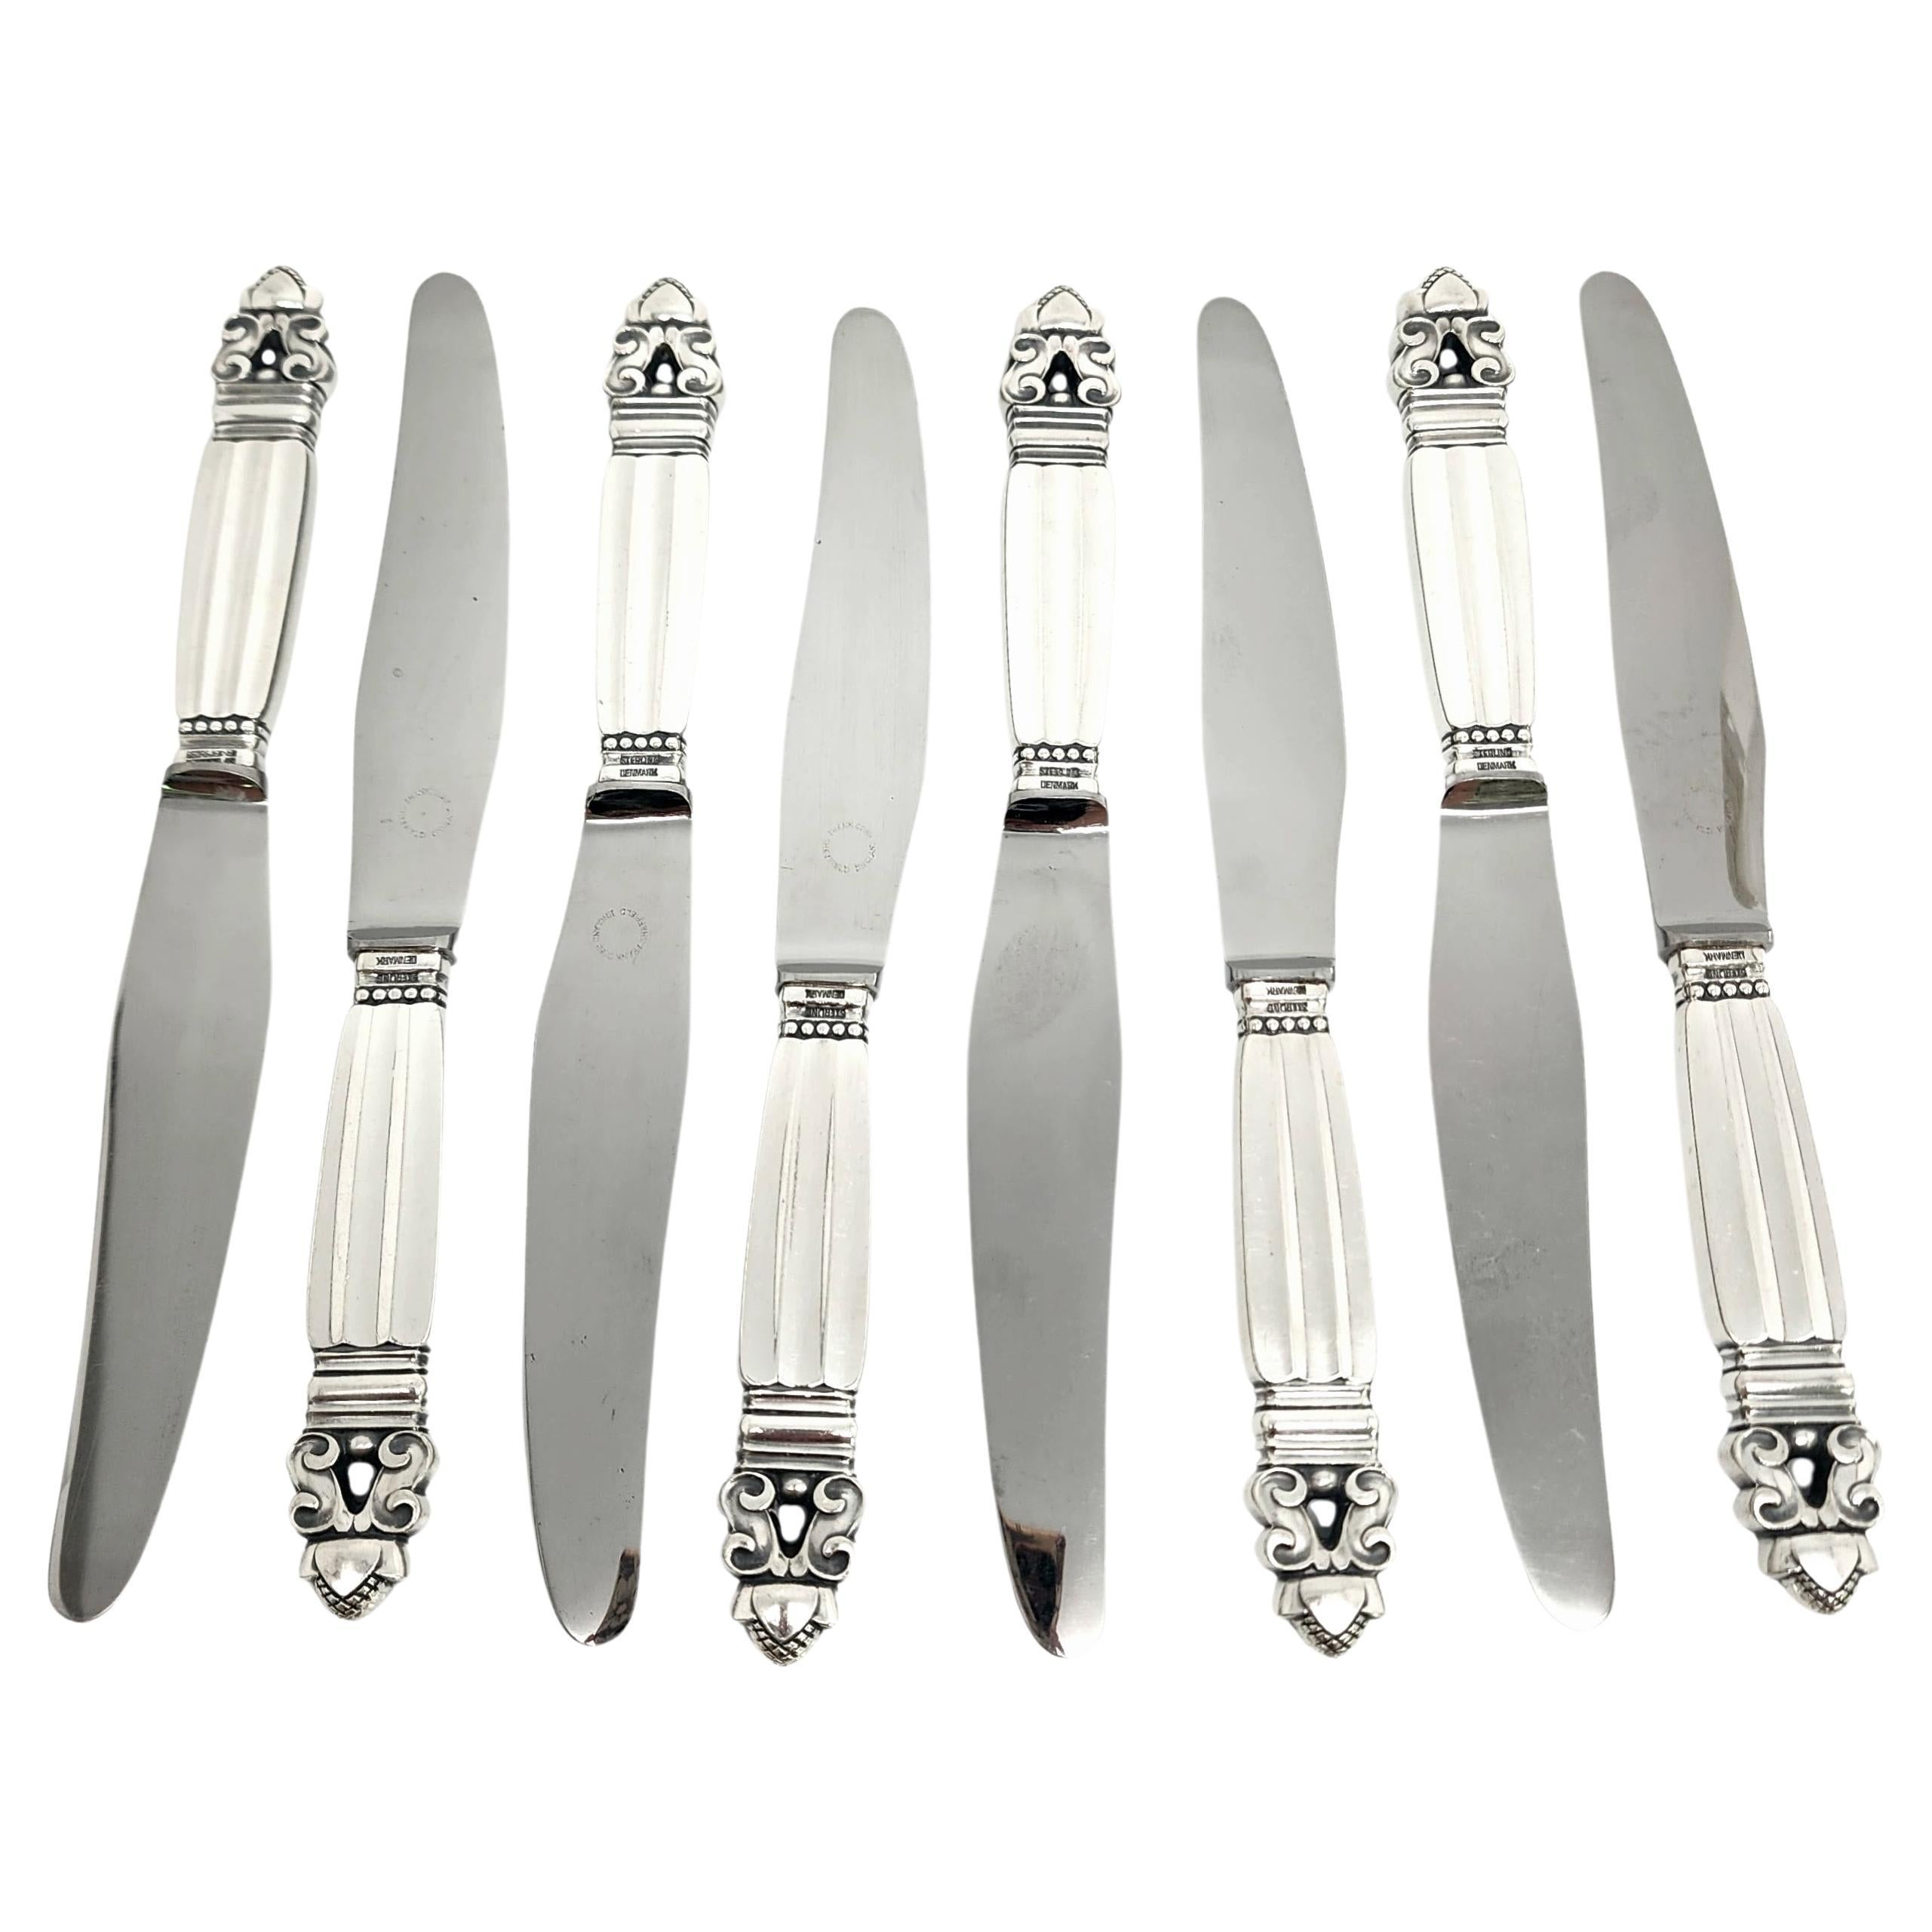 Jensen & Wendel Denmark Acorn Sterling Handle Stainless Blade Knives 8" #14923 For Sale